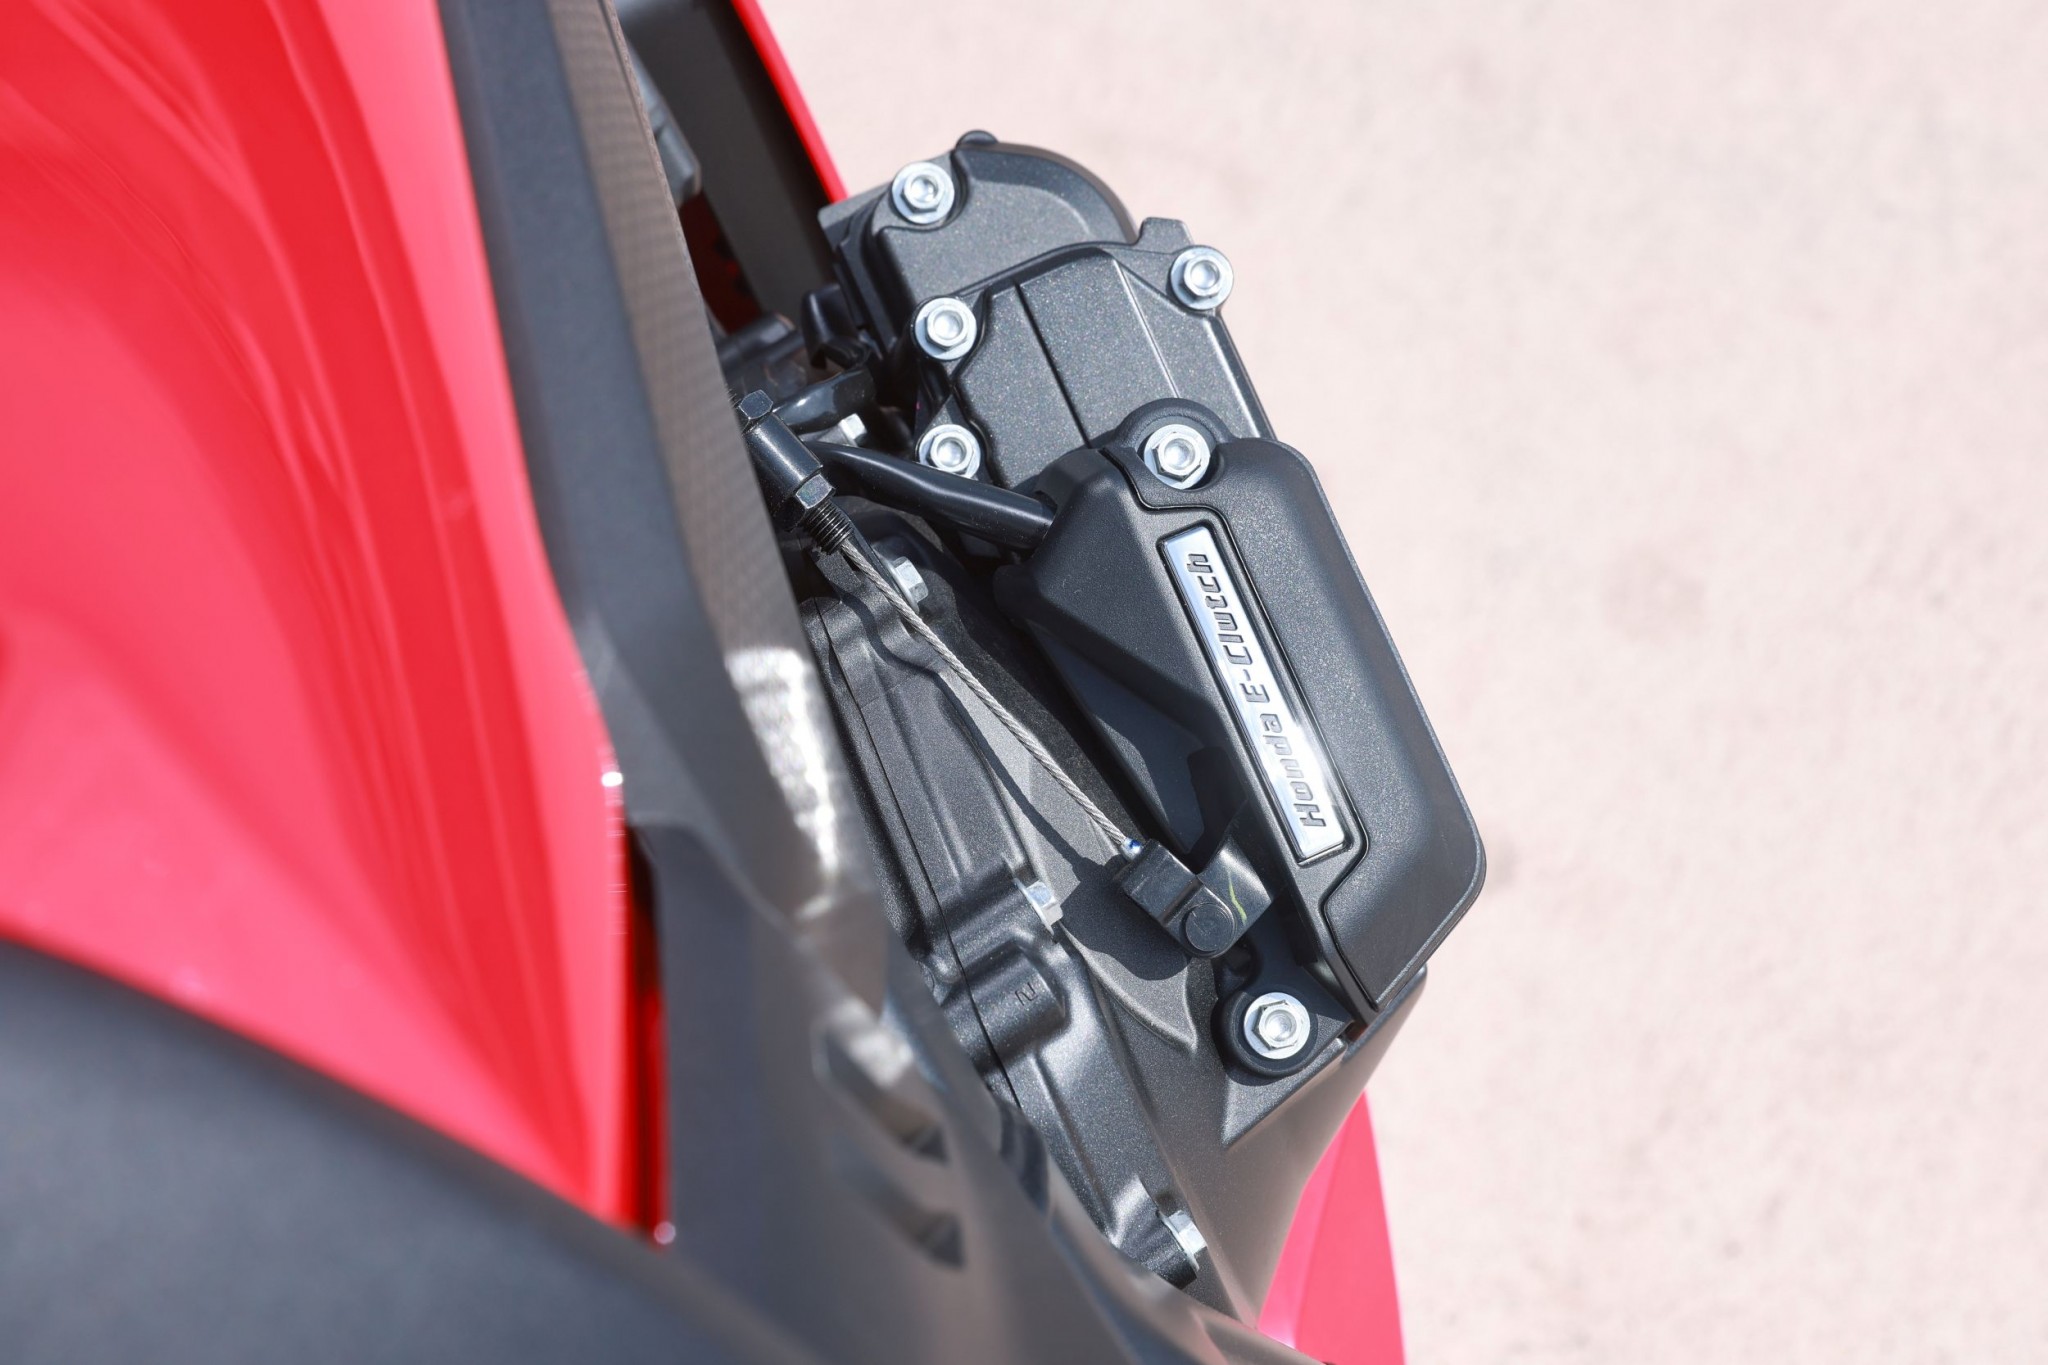 Test elektronske kvačila Honda CBR650R 2024

Honda je nedavno predstavila novu verziju svog popularnog motocikla CBR650R, koji sada dolazi sa elektronskim kvačilom, poznatim kao E-Clutch. Ova inovacija obećava da će olakšati vožnju omogućavajući vozačima da menjaju brzine bez potrebe za ručnim korišćenjem kvačila. 

Elektronsko kvačilo funkcioniše tako što automatski reguliše pritisak potreban za aktiviranje kvačila, što omogućava glatke promene brzina bez prekida u isporuci snage. Ovo je posebno korisno pri vožnji u gradu, gde česte promene brzina mogu biti naporne i otežavaju koncentraciju na saobraćaj.

Testiranje ovog sistema pokazalo je da E-Clutch ne samo da olakšava upravljanje motociklom, već i povećava sigurnost vožnje. Vozači mogu da se fokusiraju na okolinu bez brige o mehaničkim aspektima vožnje, što je posebno važno za manje iskusne vozače.

Honda CBR650R sa elektronskim kvačilom biće dostupna na tržištu od 2024. godine i očekuje se da će privući veliki broj kupaca, kako iskusnih tako i onih koji tek ulaze u svet motociklizma. Ovaj model predstavlja značajan korak napred u tehnologiji motocikala i potencijalno postavlja nove standarde u industriji. - Слика 24